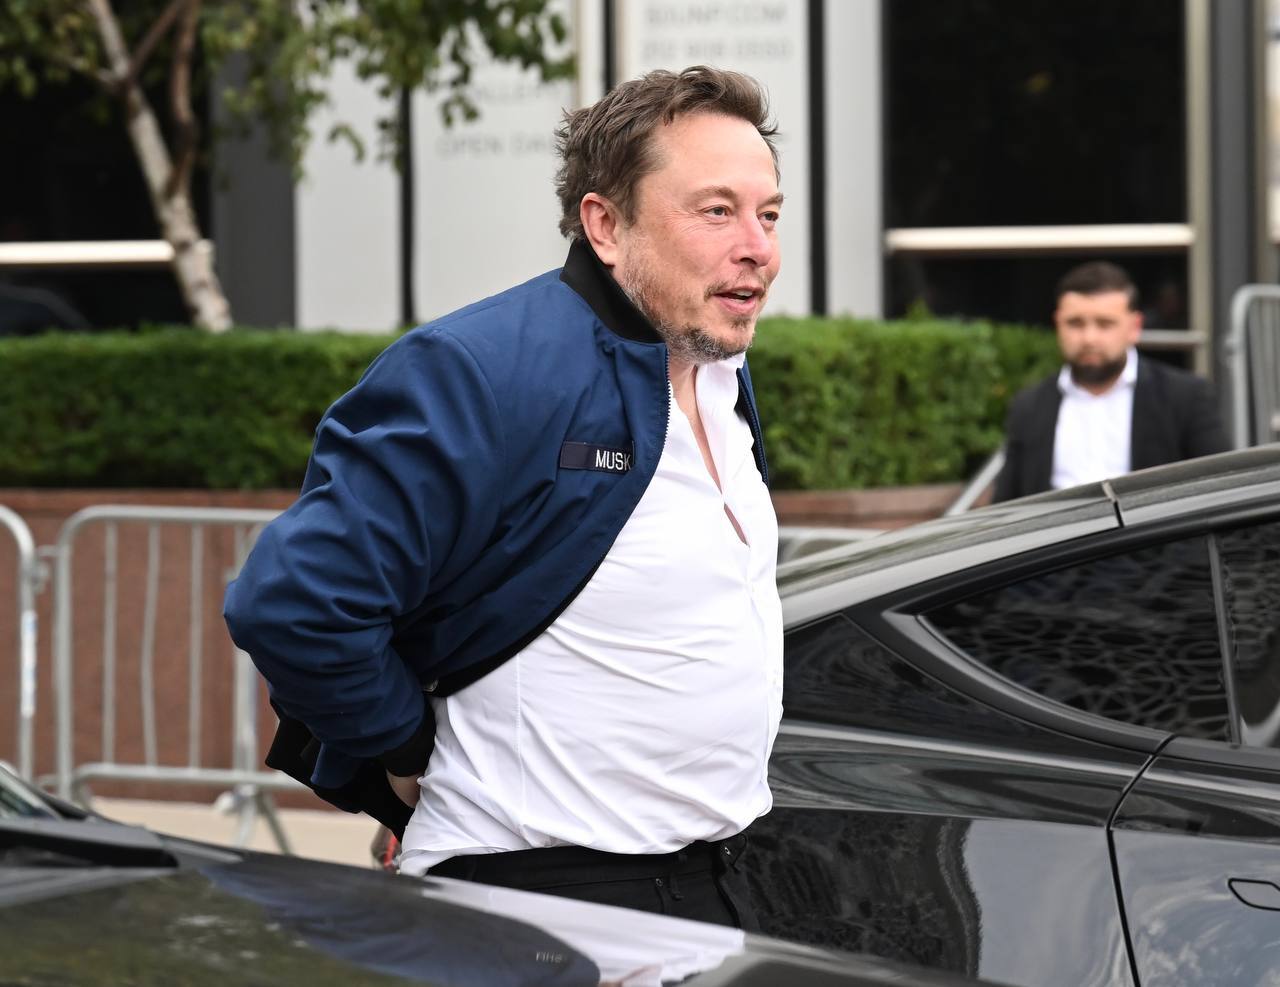 Elon Musk Fires Barrett .50-Caliber Sniper From The Hip In Viral Video: Watch